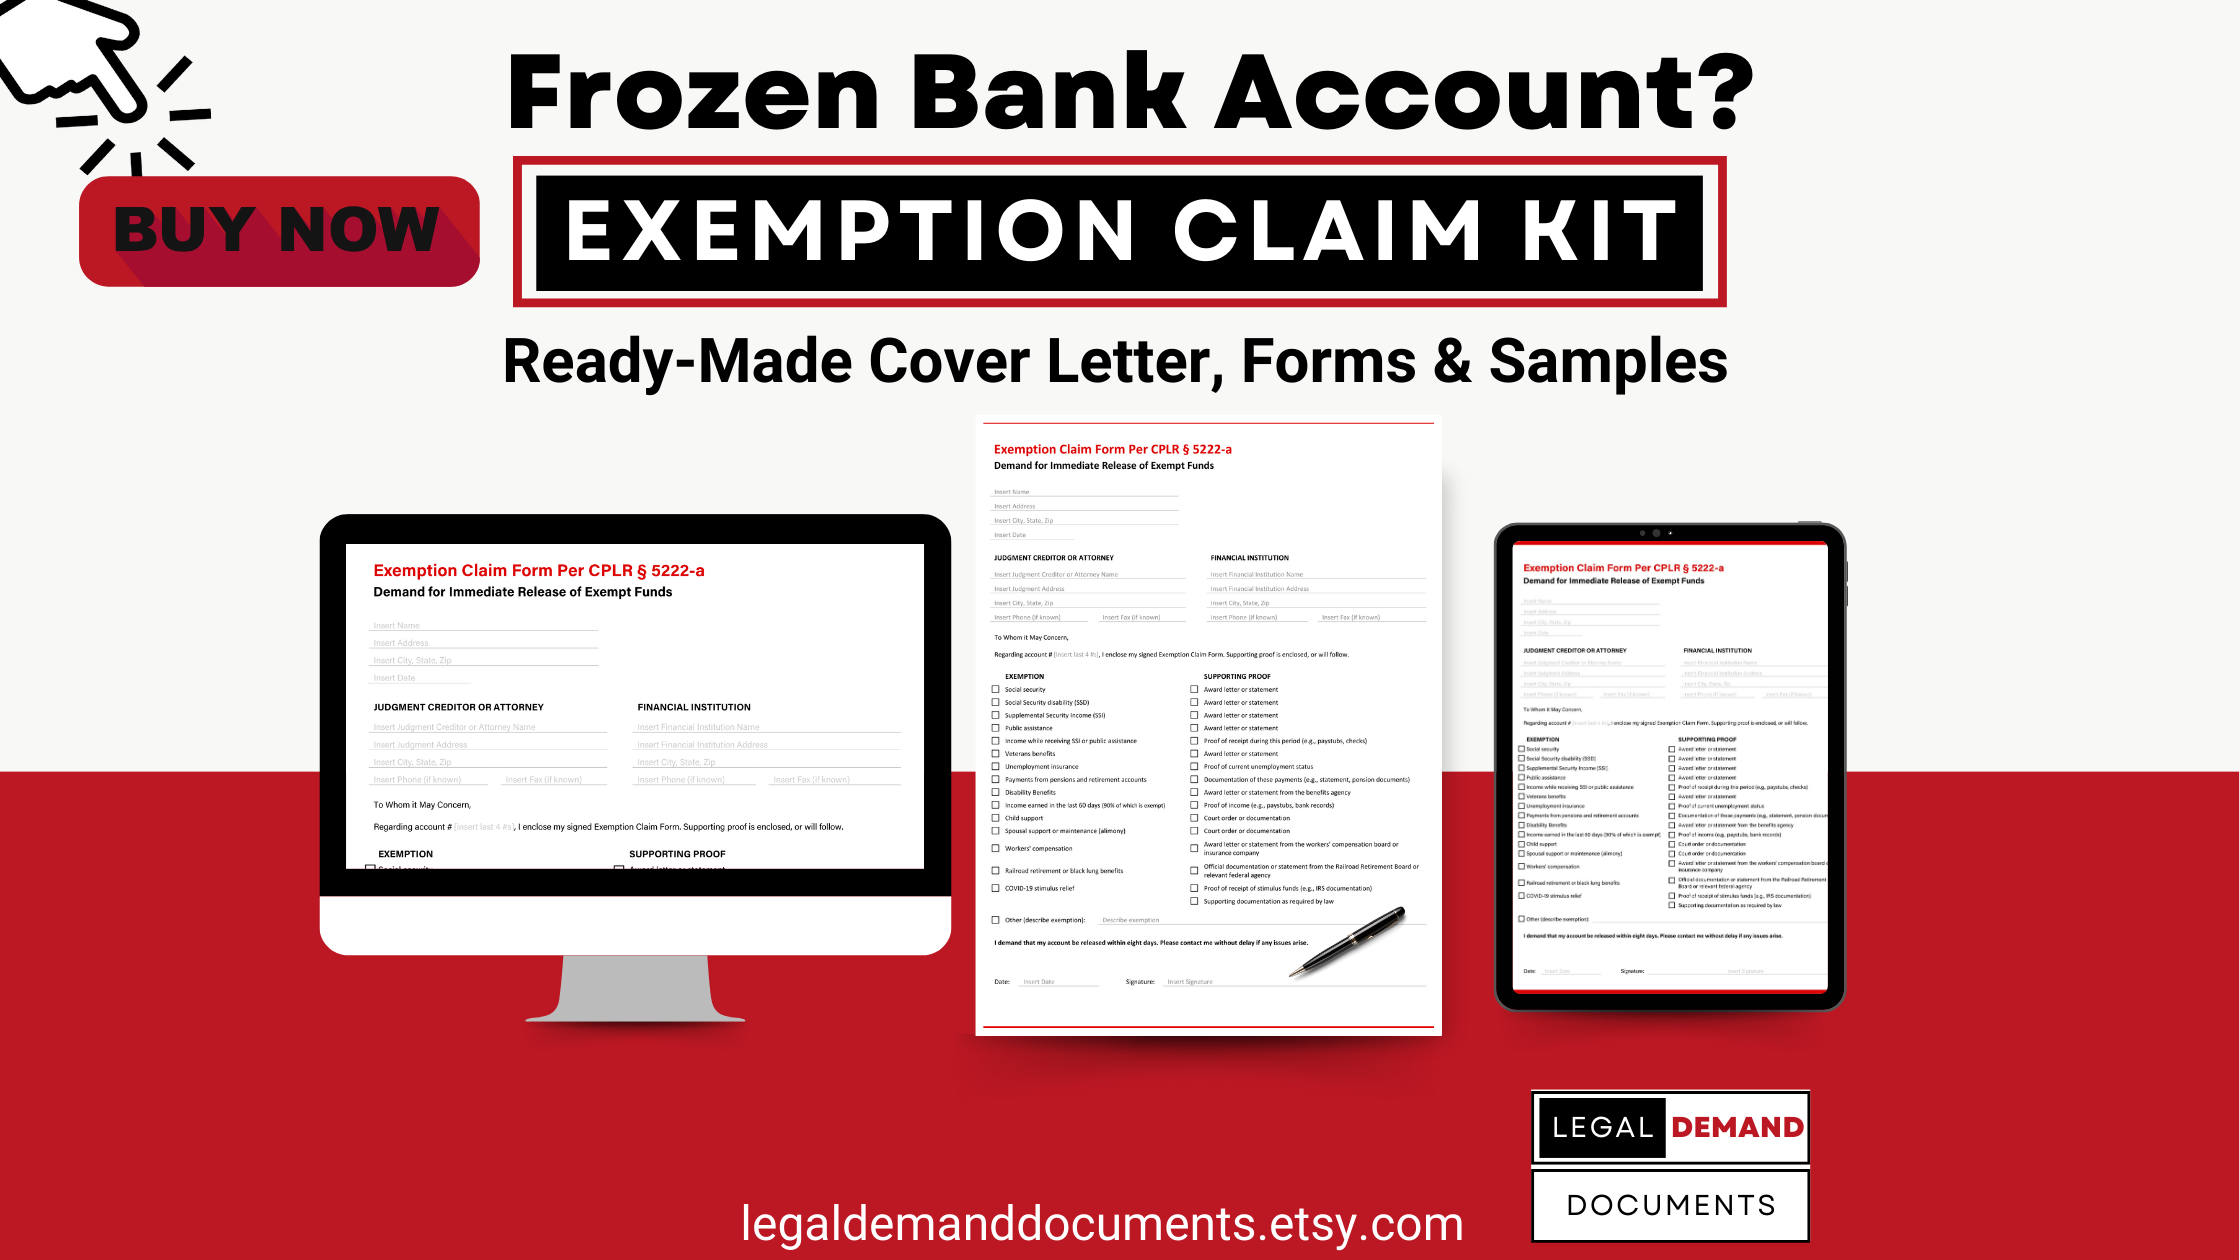 Exemption Claim Kit Thumbnail